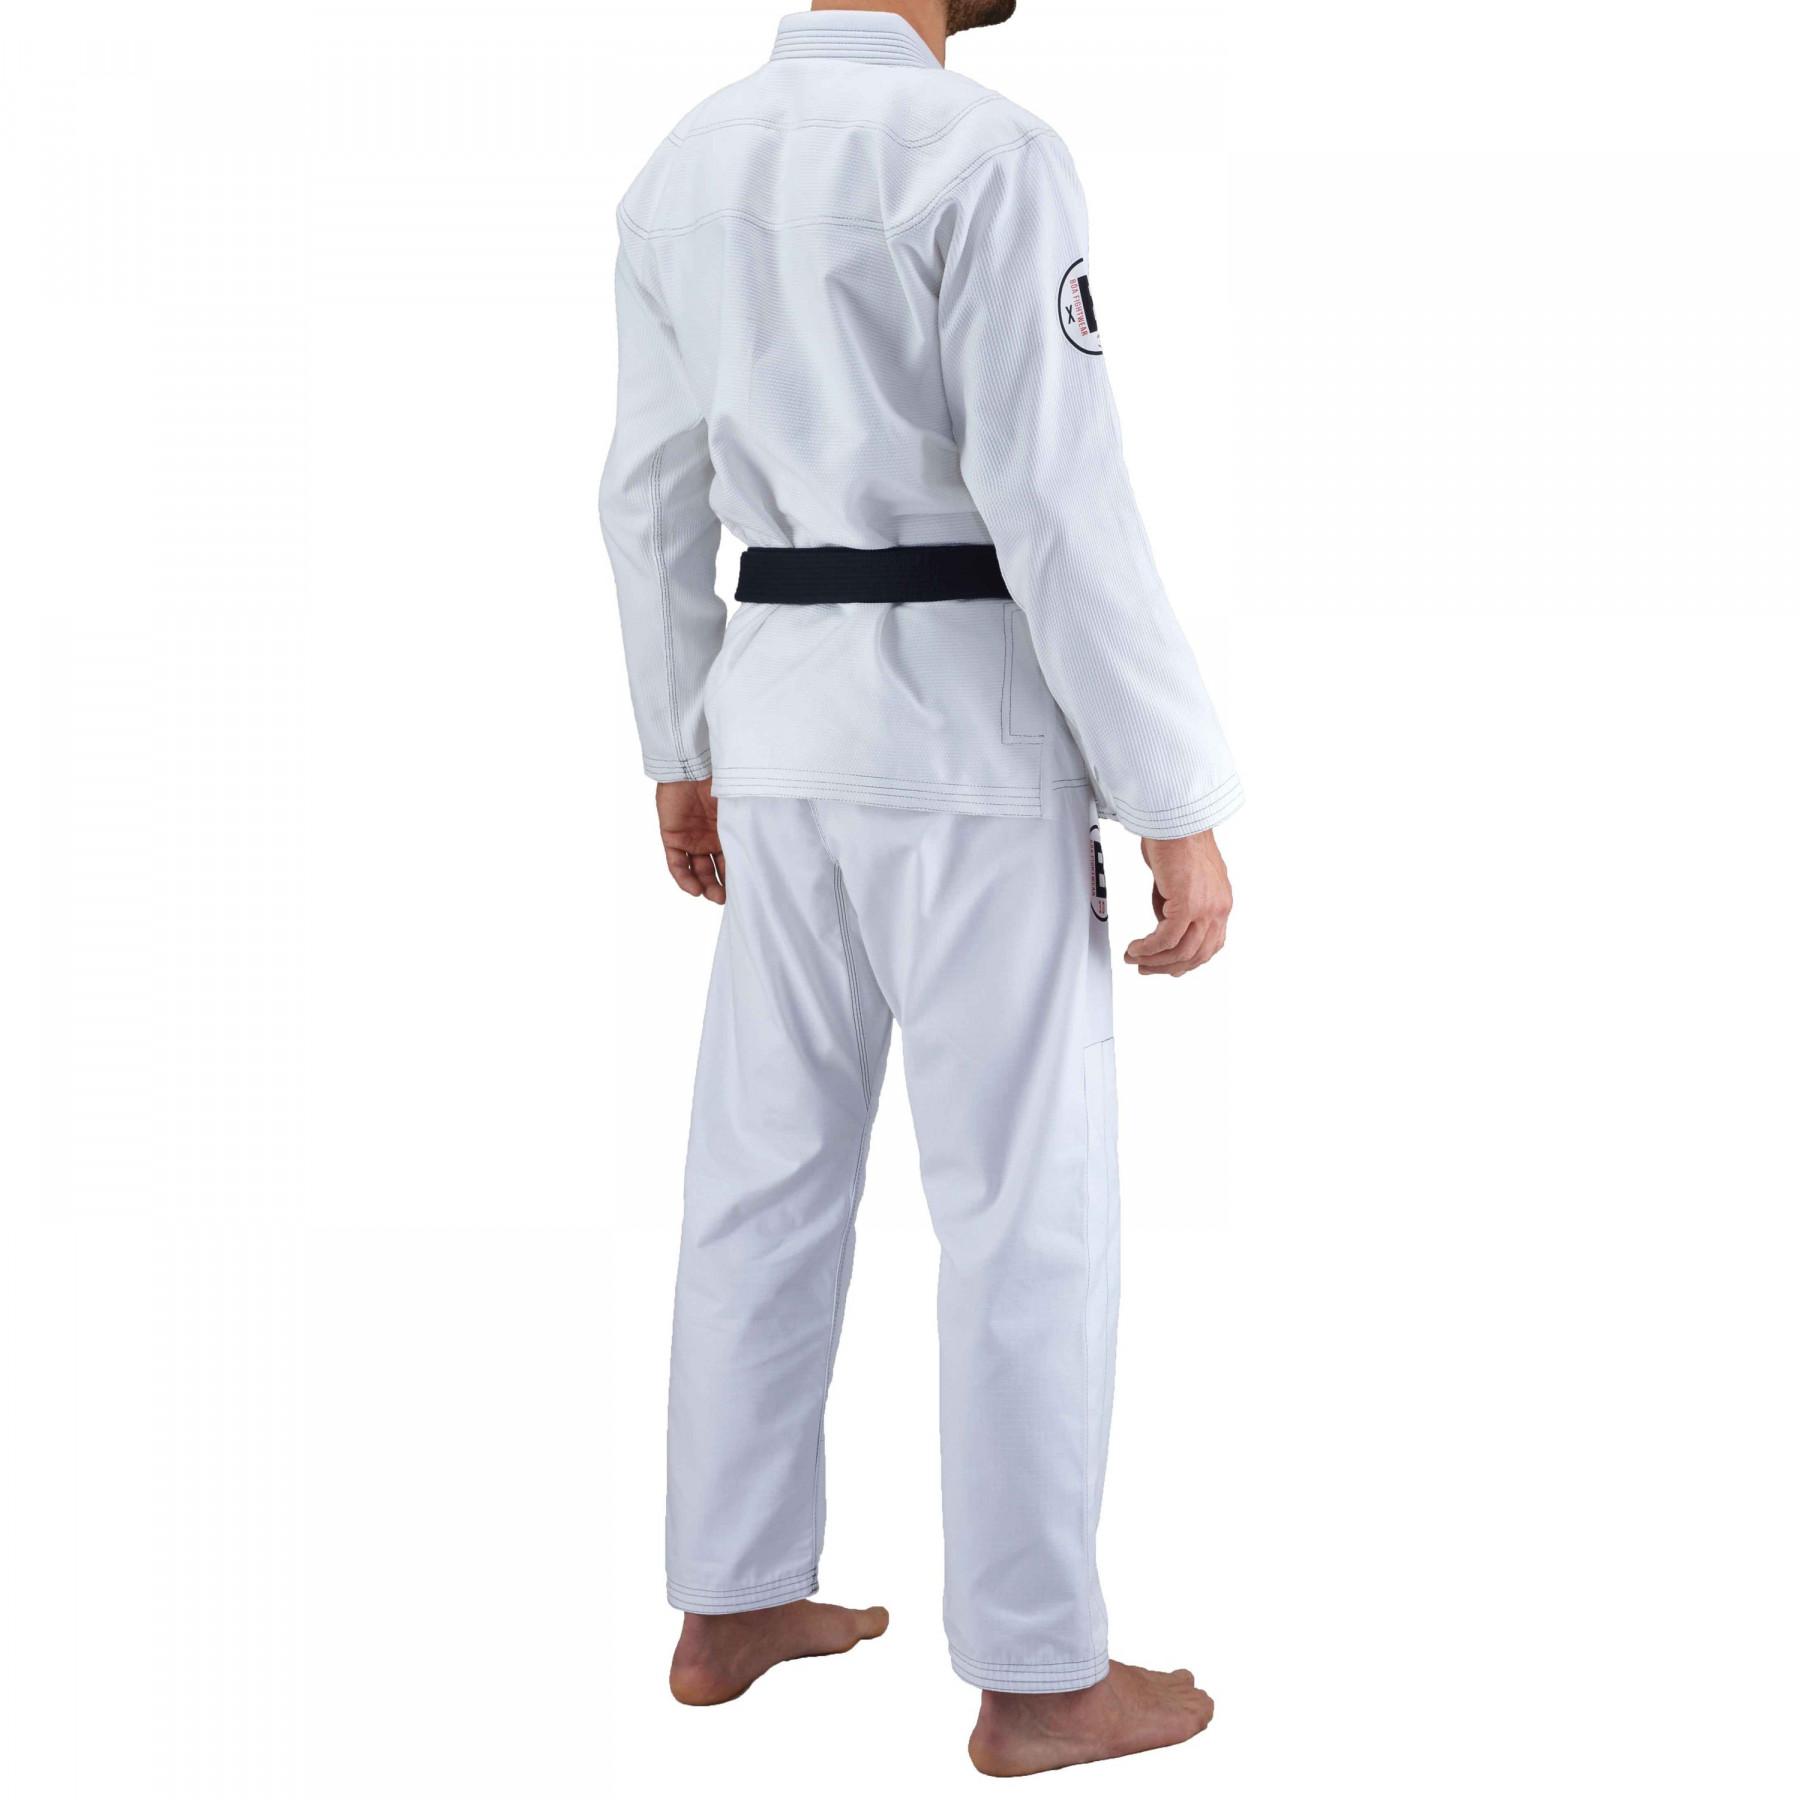 Kimono van jjb Bõa Armor de Competiçao 3.0 Blanc